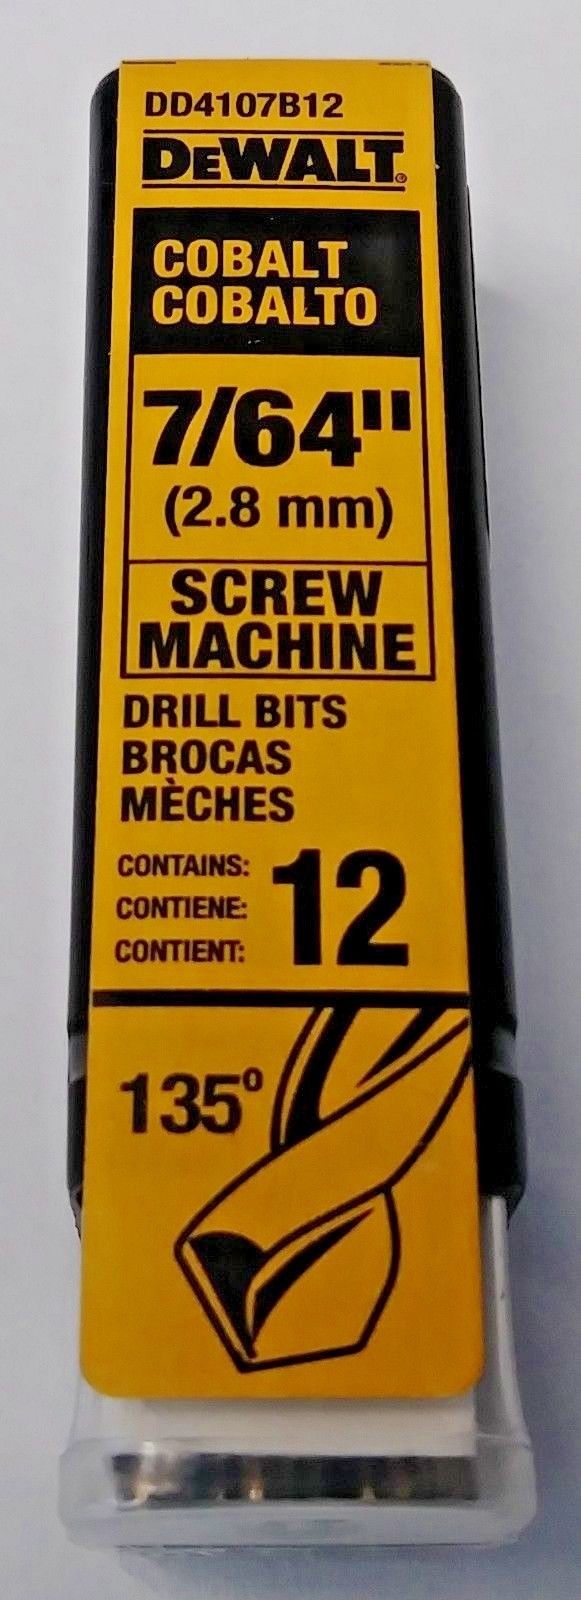 Dewalt DD4107B12 7/64" Cobalt Screw Machine Drill Bits 12 Pack Germany